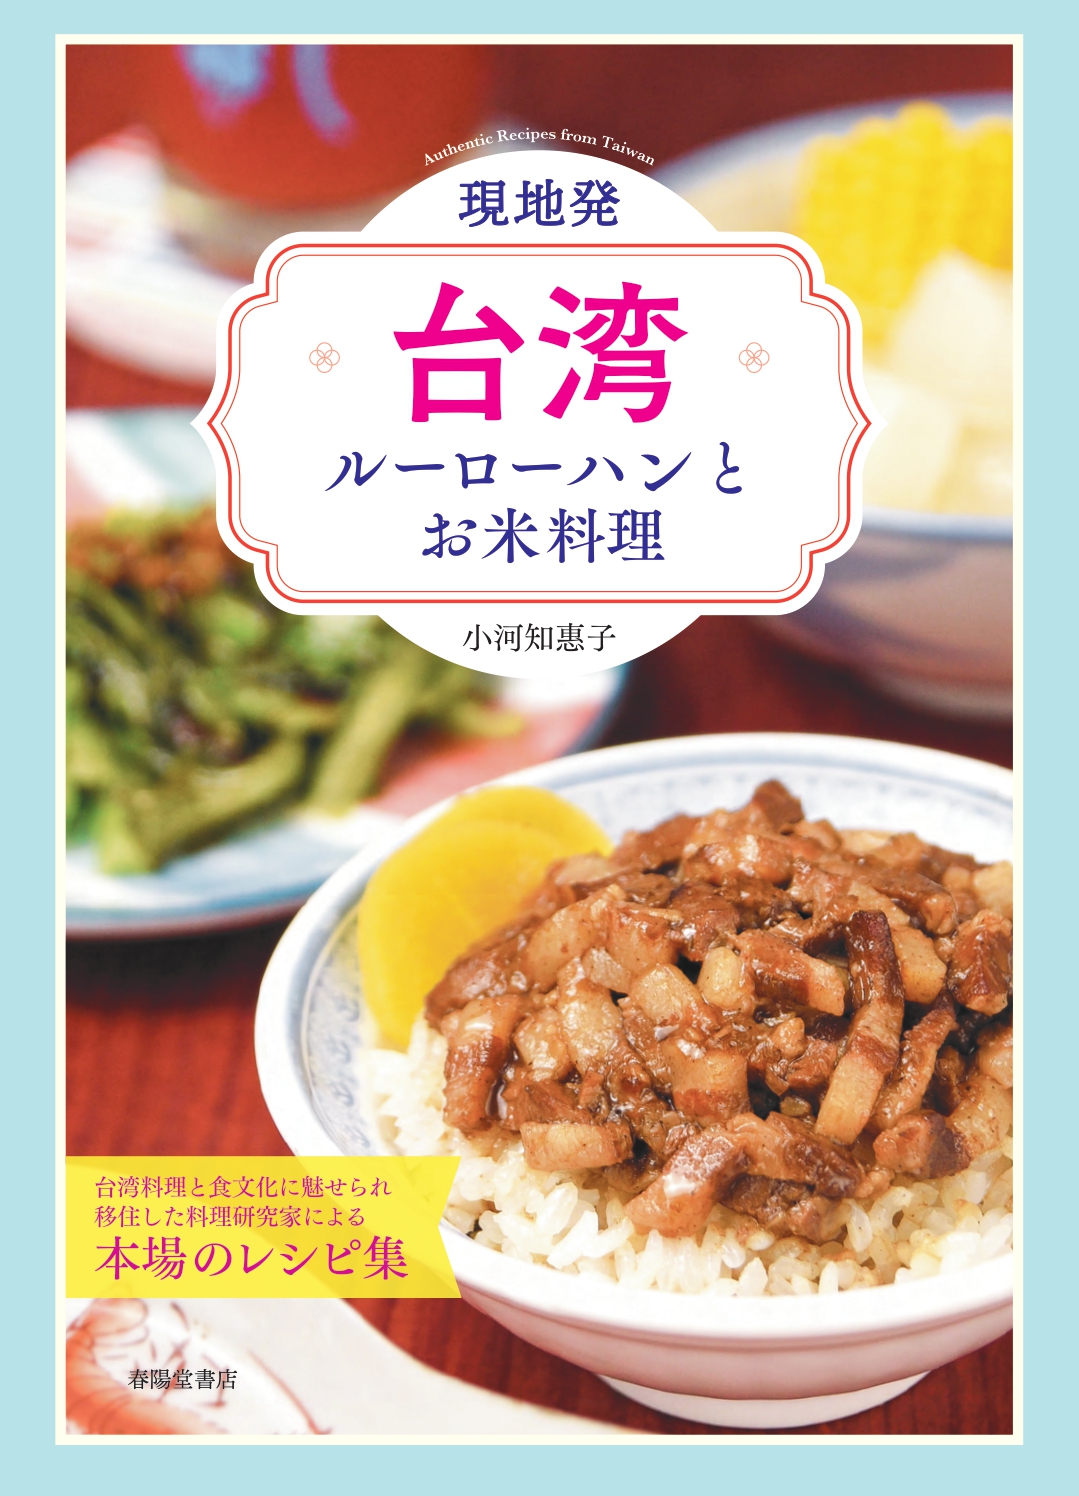 現地発・台湾ルーローハンとお米料理の商品画像